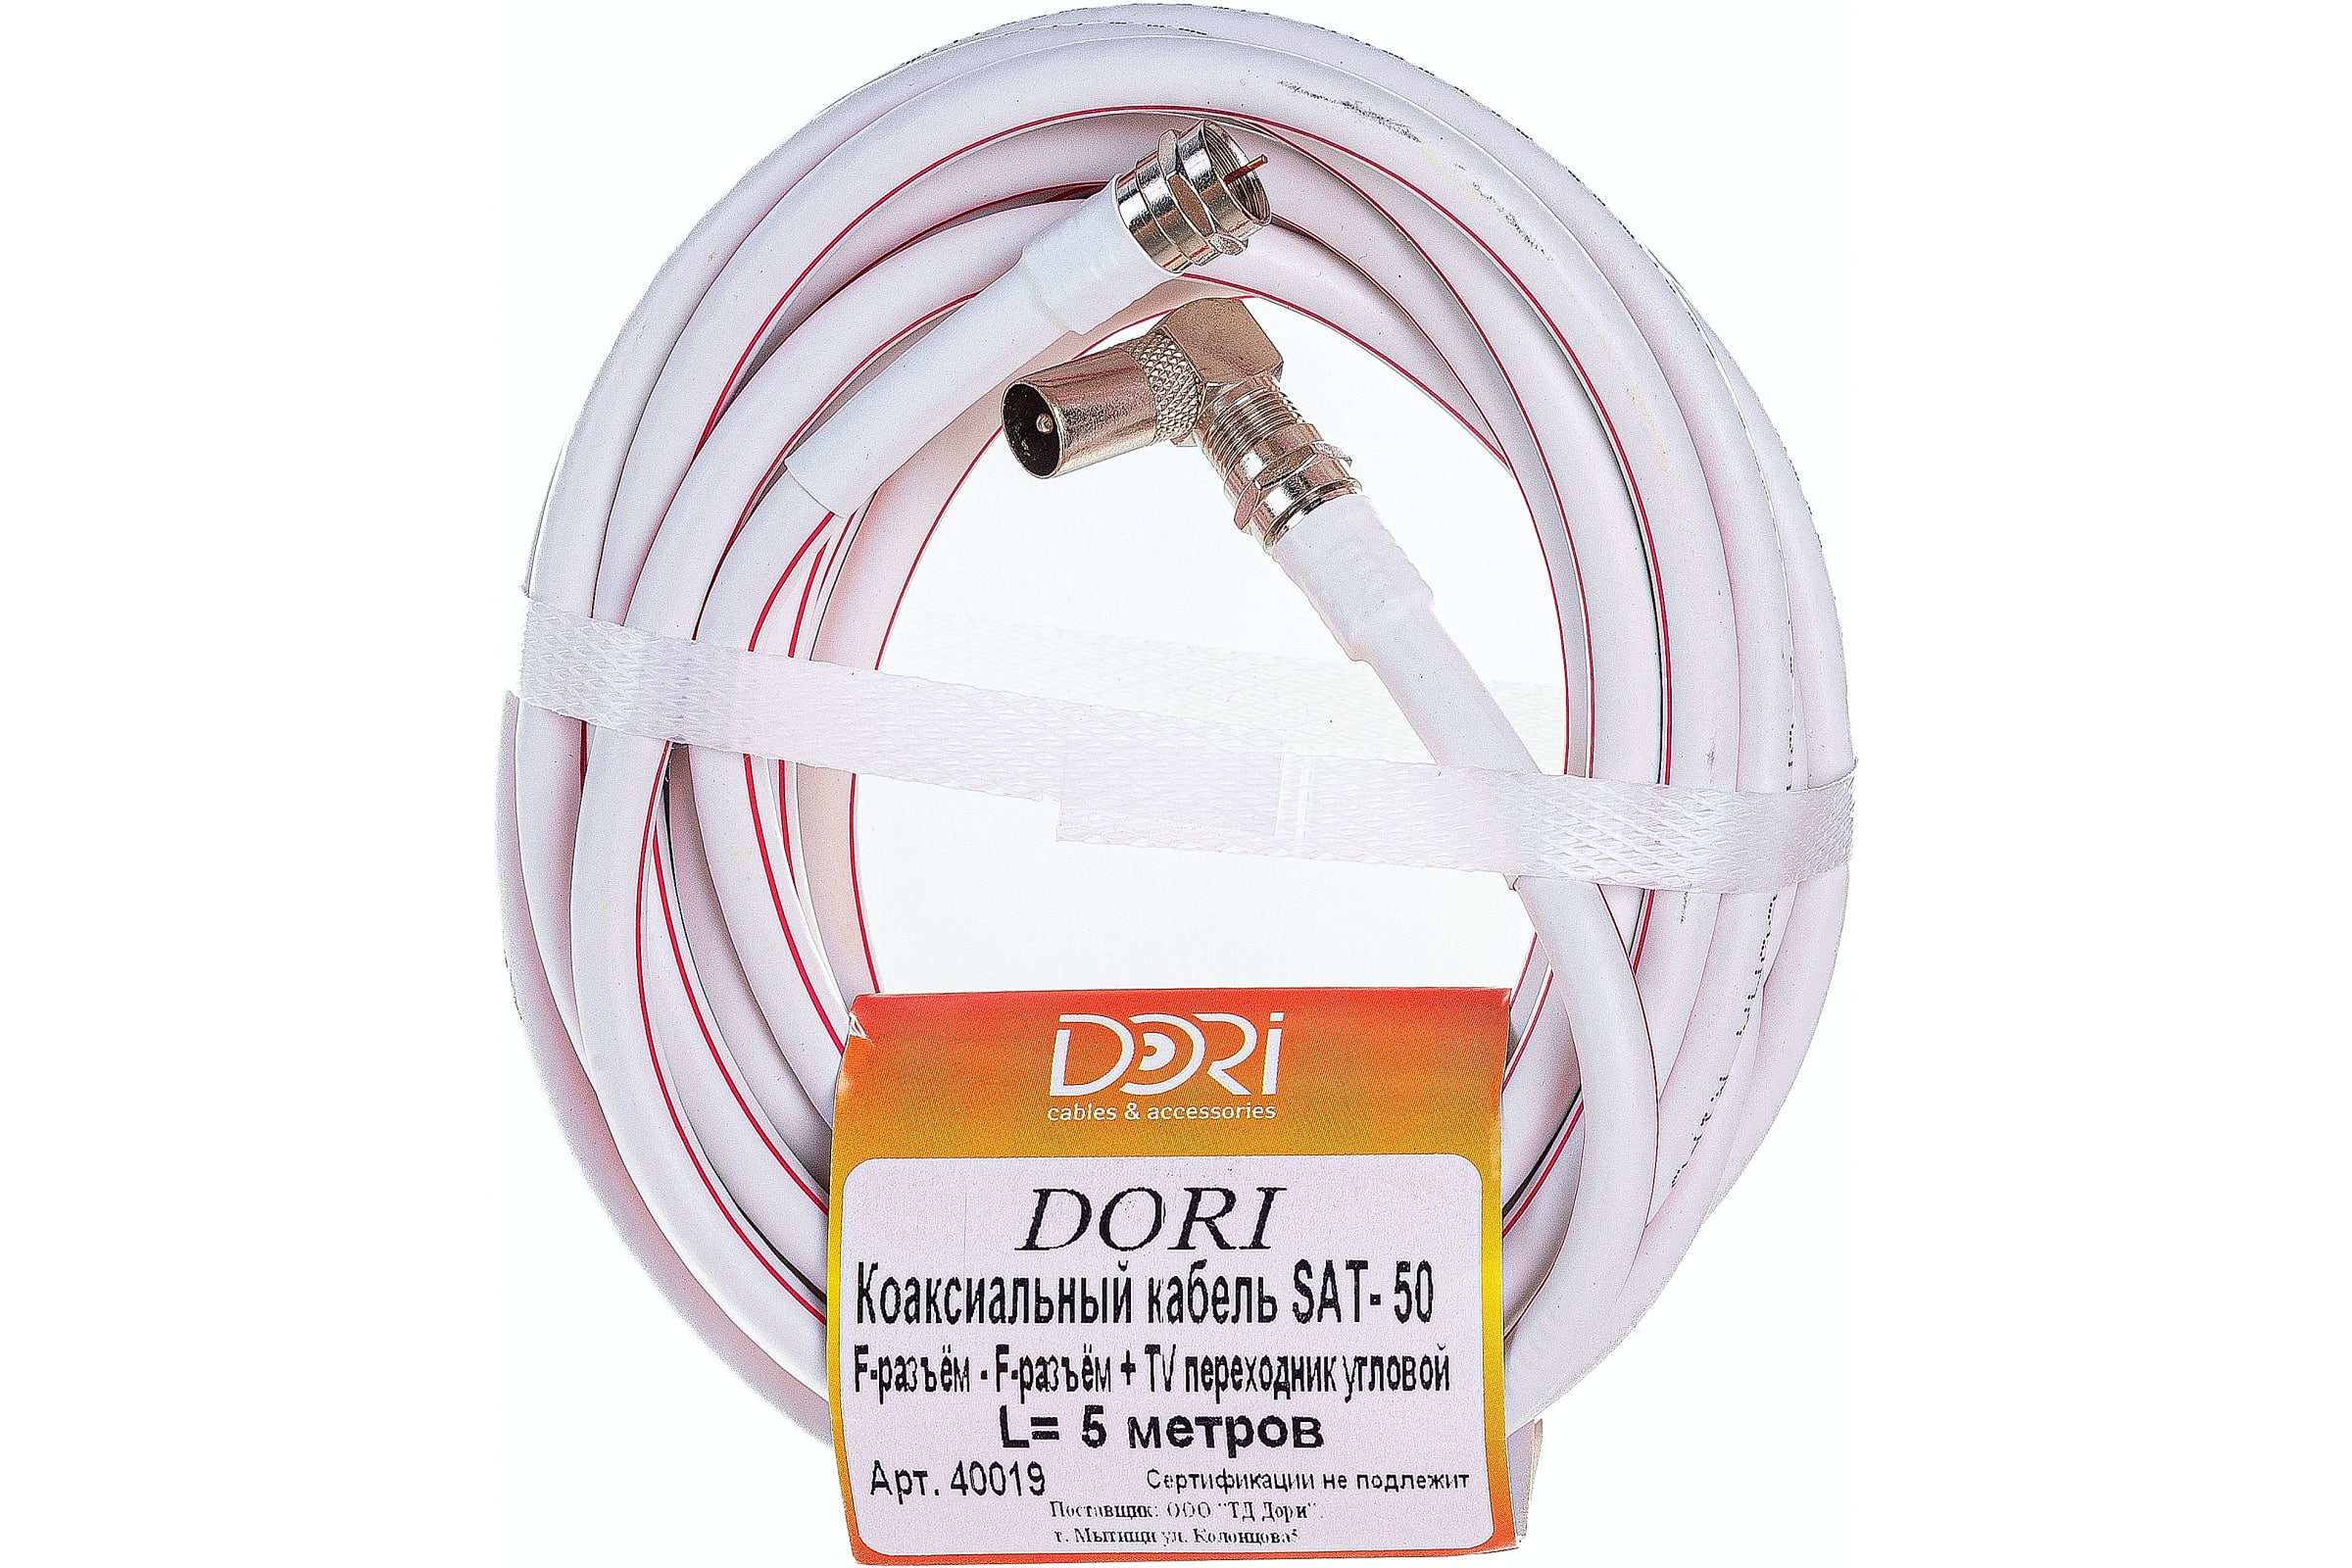 Коаксиальный кабель DORI SAT-50 на F-разъёмах 5 м + переходник на TV 40019 кабель переходник telecom